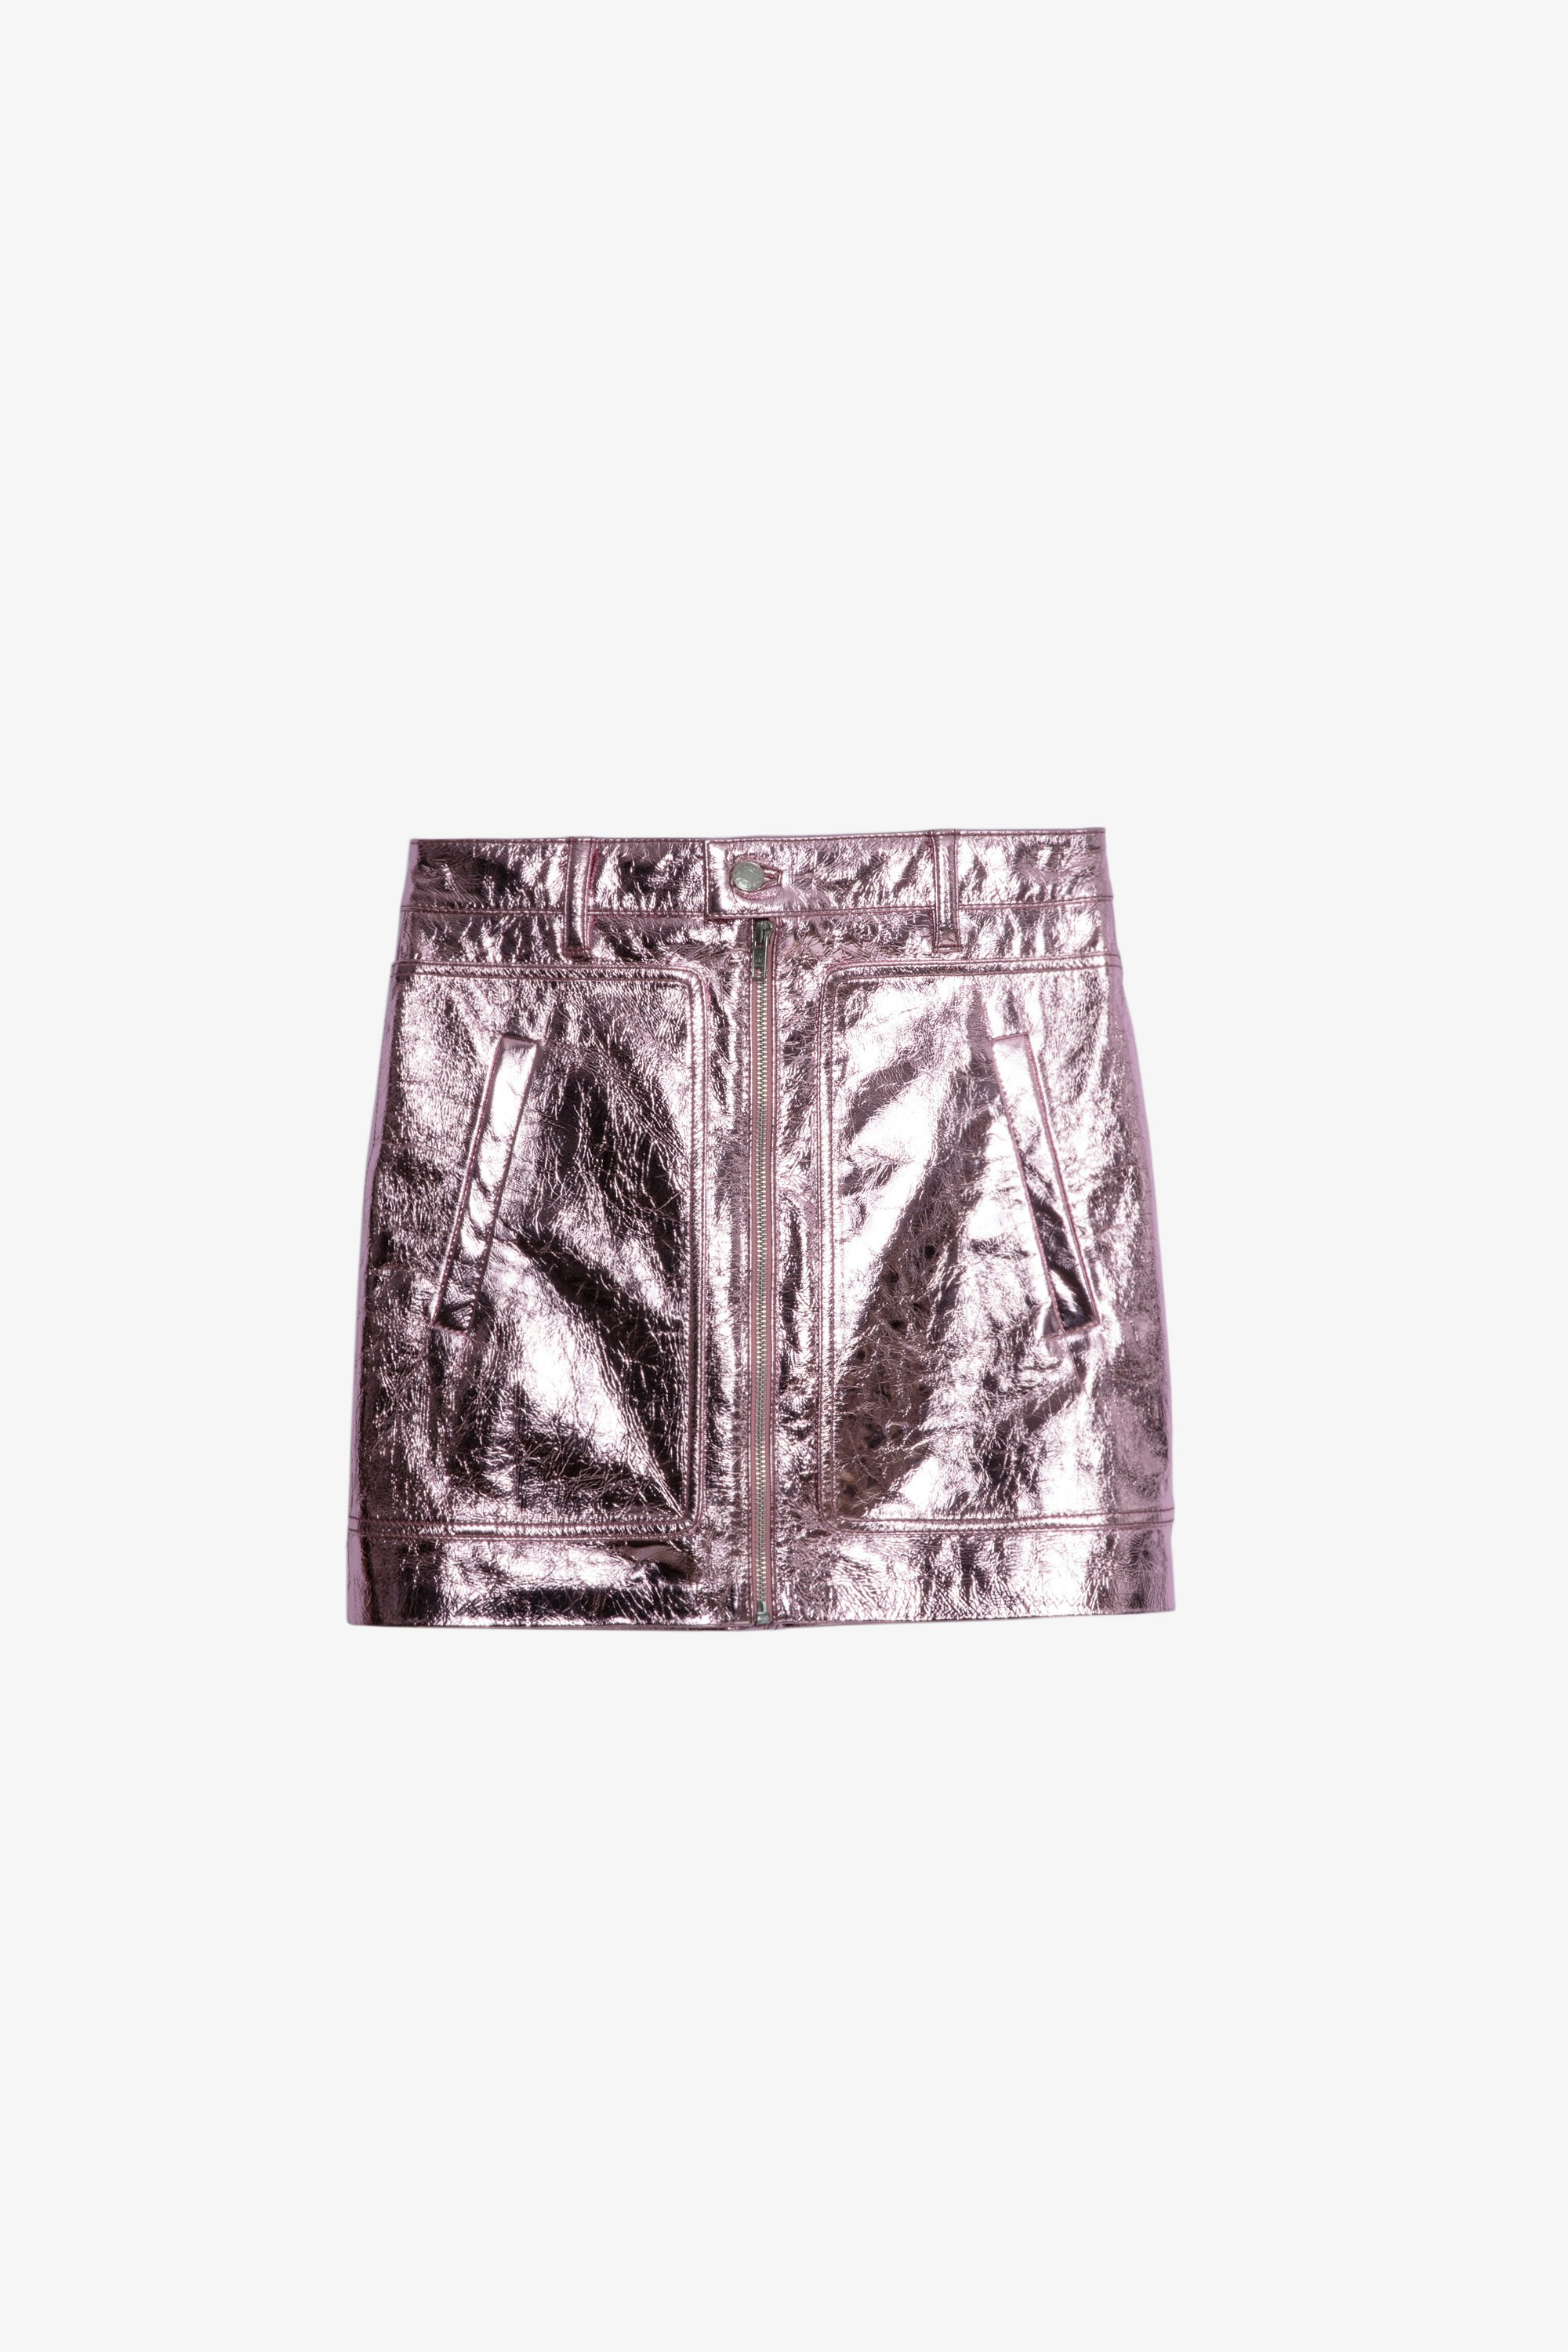 レザー John スカート Women’s pink metallic leather short skirt